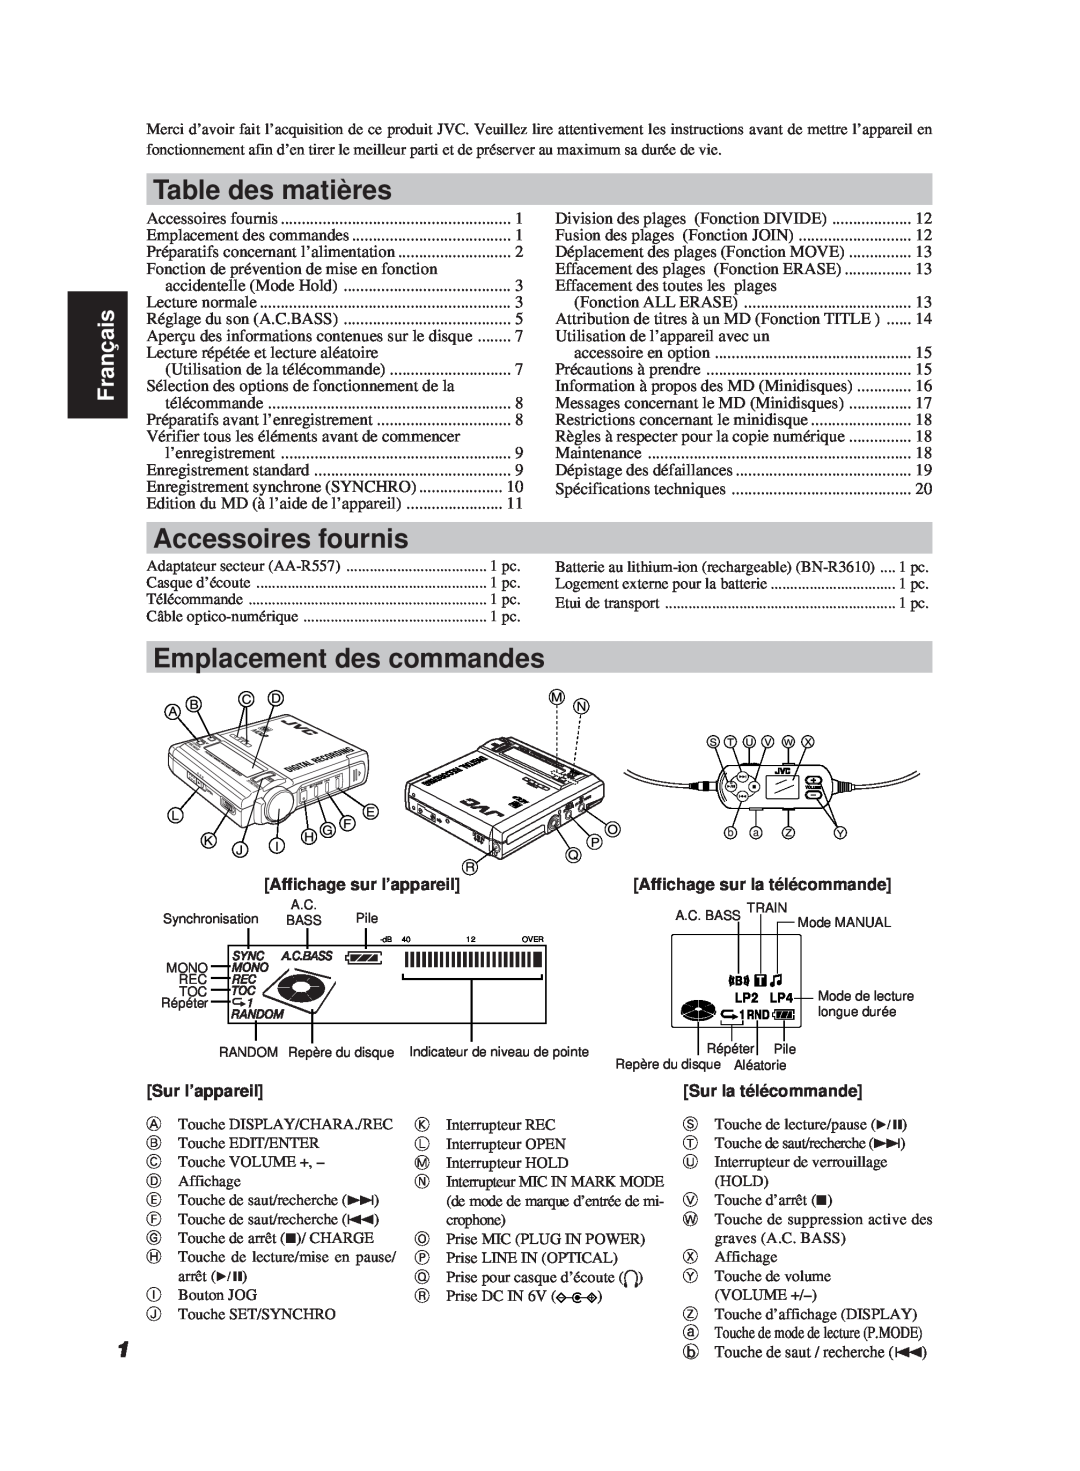 JVC XM-R700SL Table des matières, Accessoires fournis, Emplacement des commandes, Français, Affichage sur la télécommande 